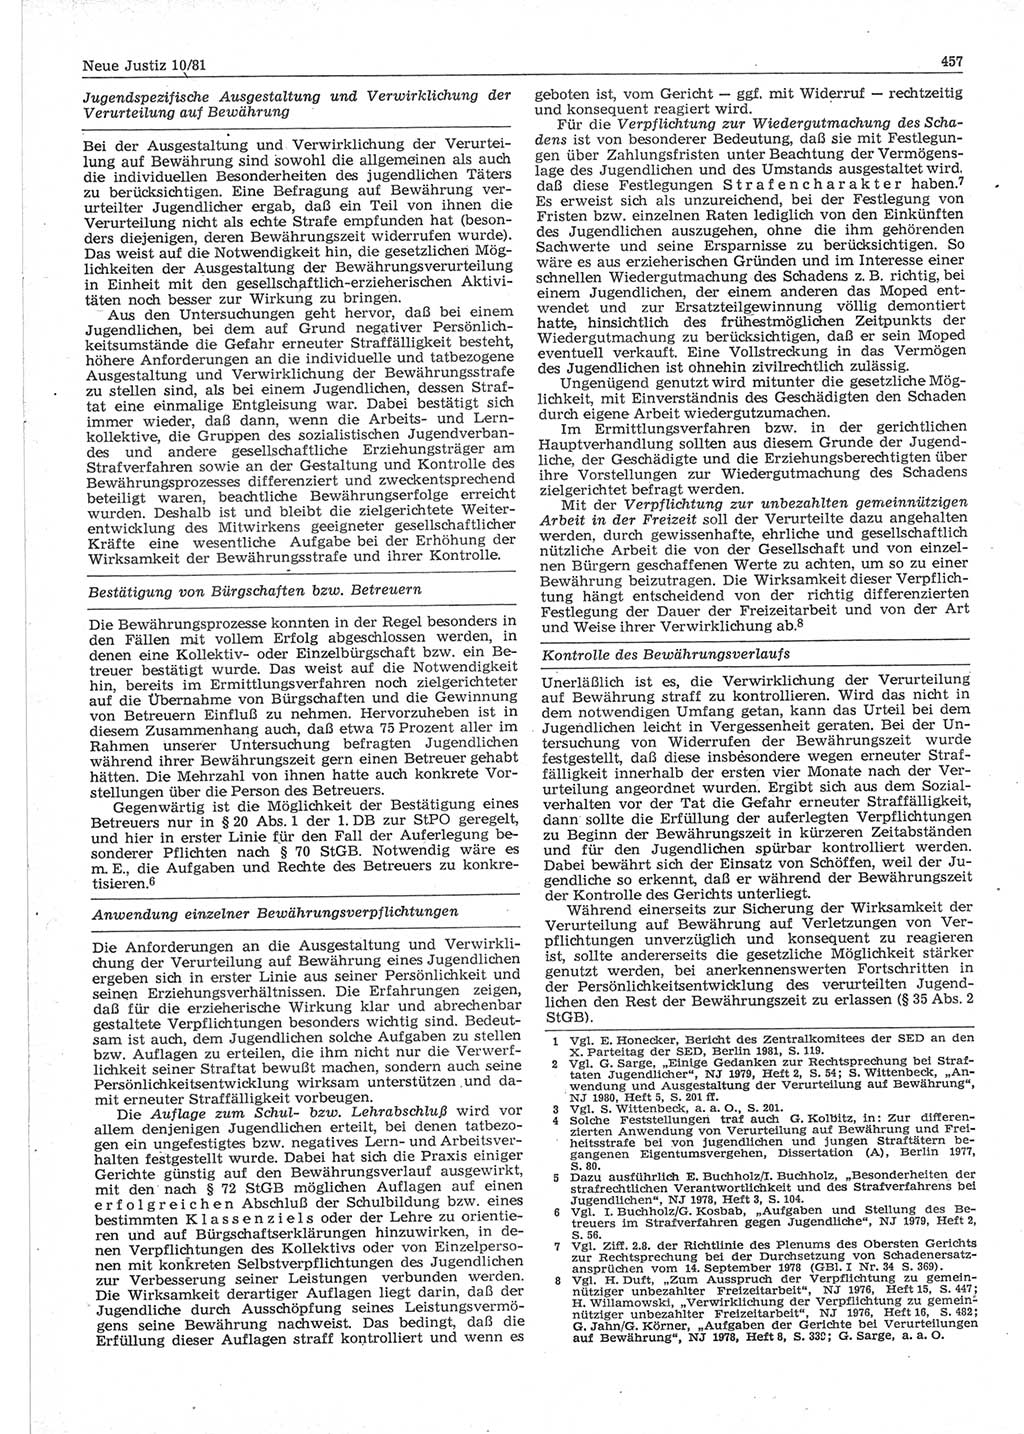 Neue Justiz (NJ), Zeitschrift für sozialistisches Recht und Gesetzlichkeit [Deutsche Demokratische Republik (DDR)], 35. Jahrgang 1981, Seite 457 (NJ DDR 1981, S. 457)